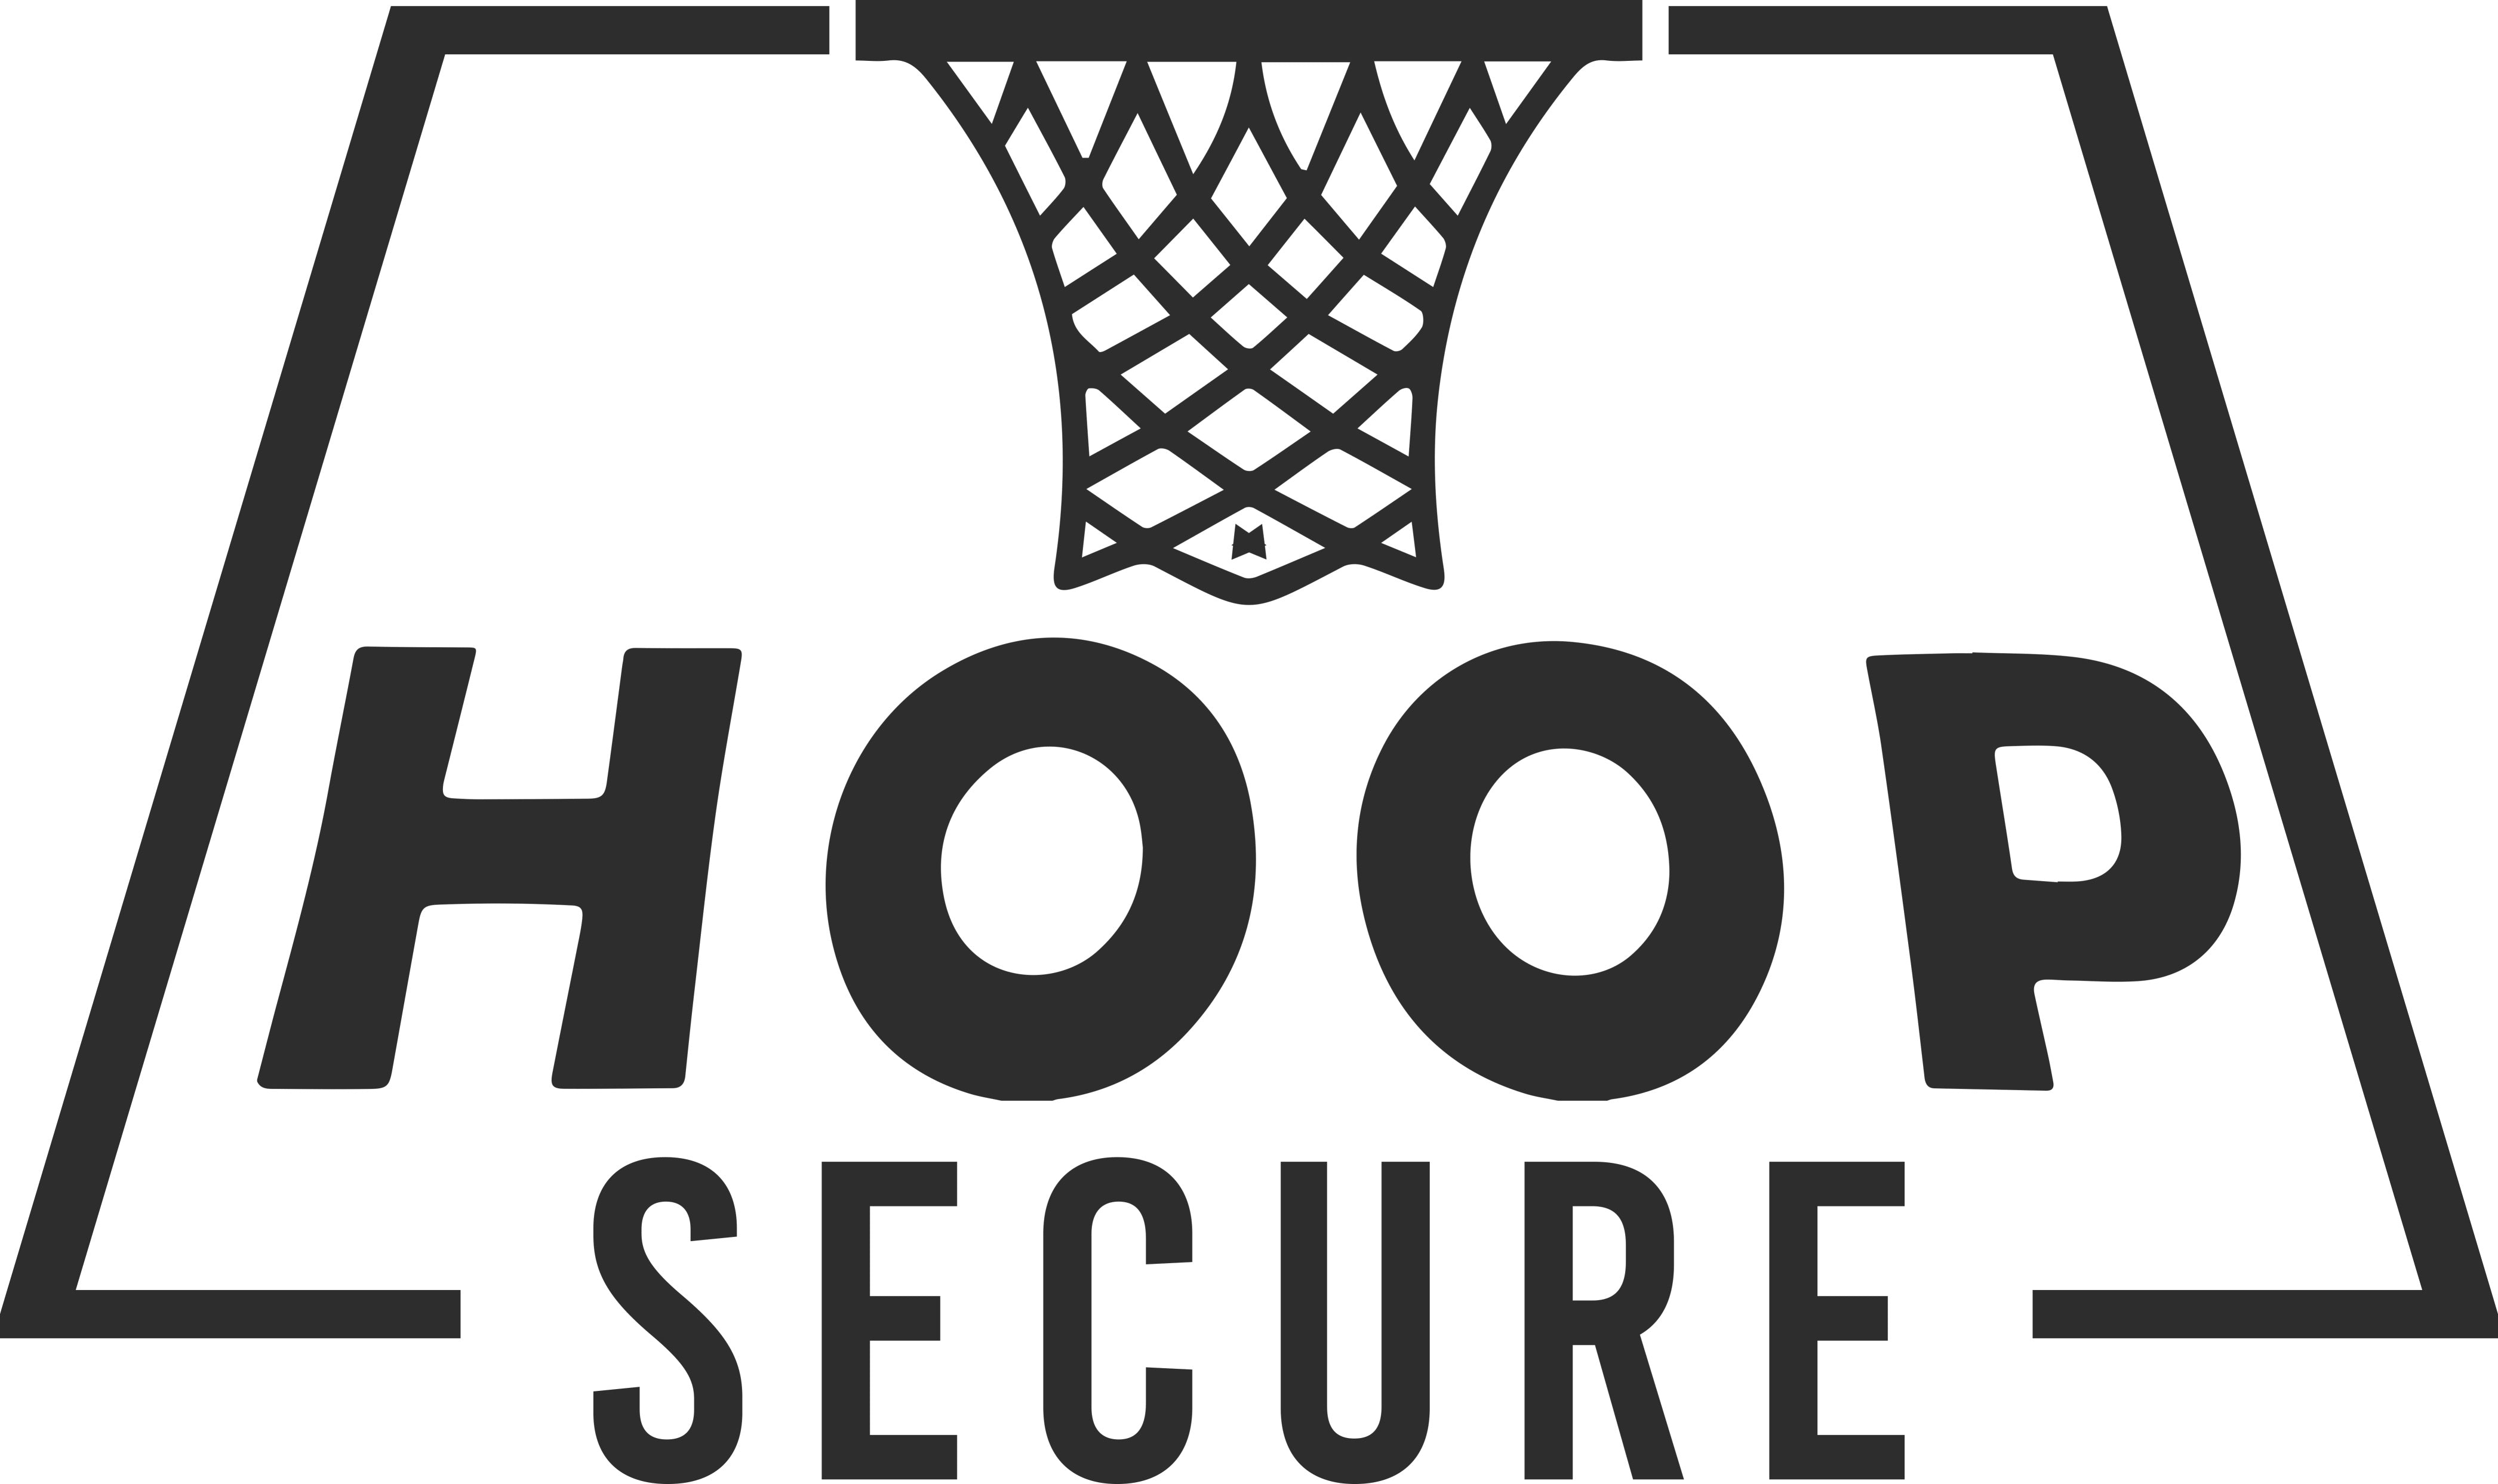 Hoop Secure